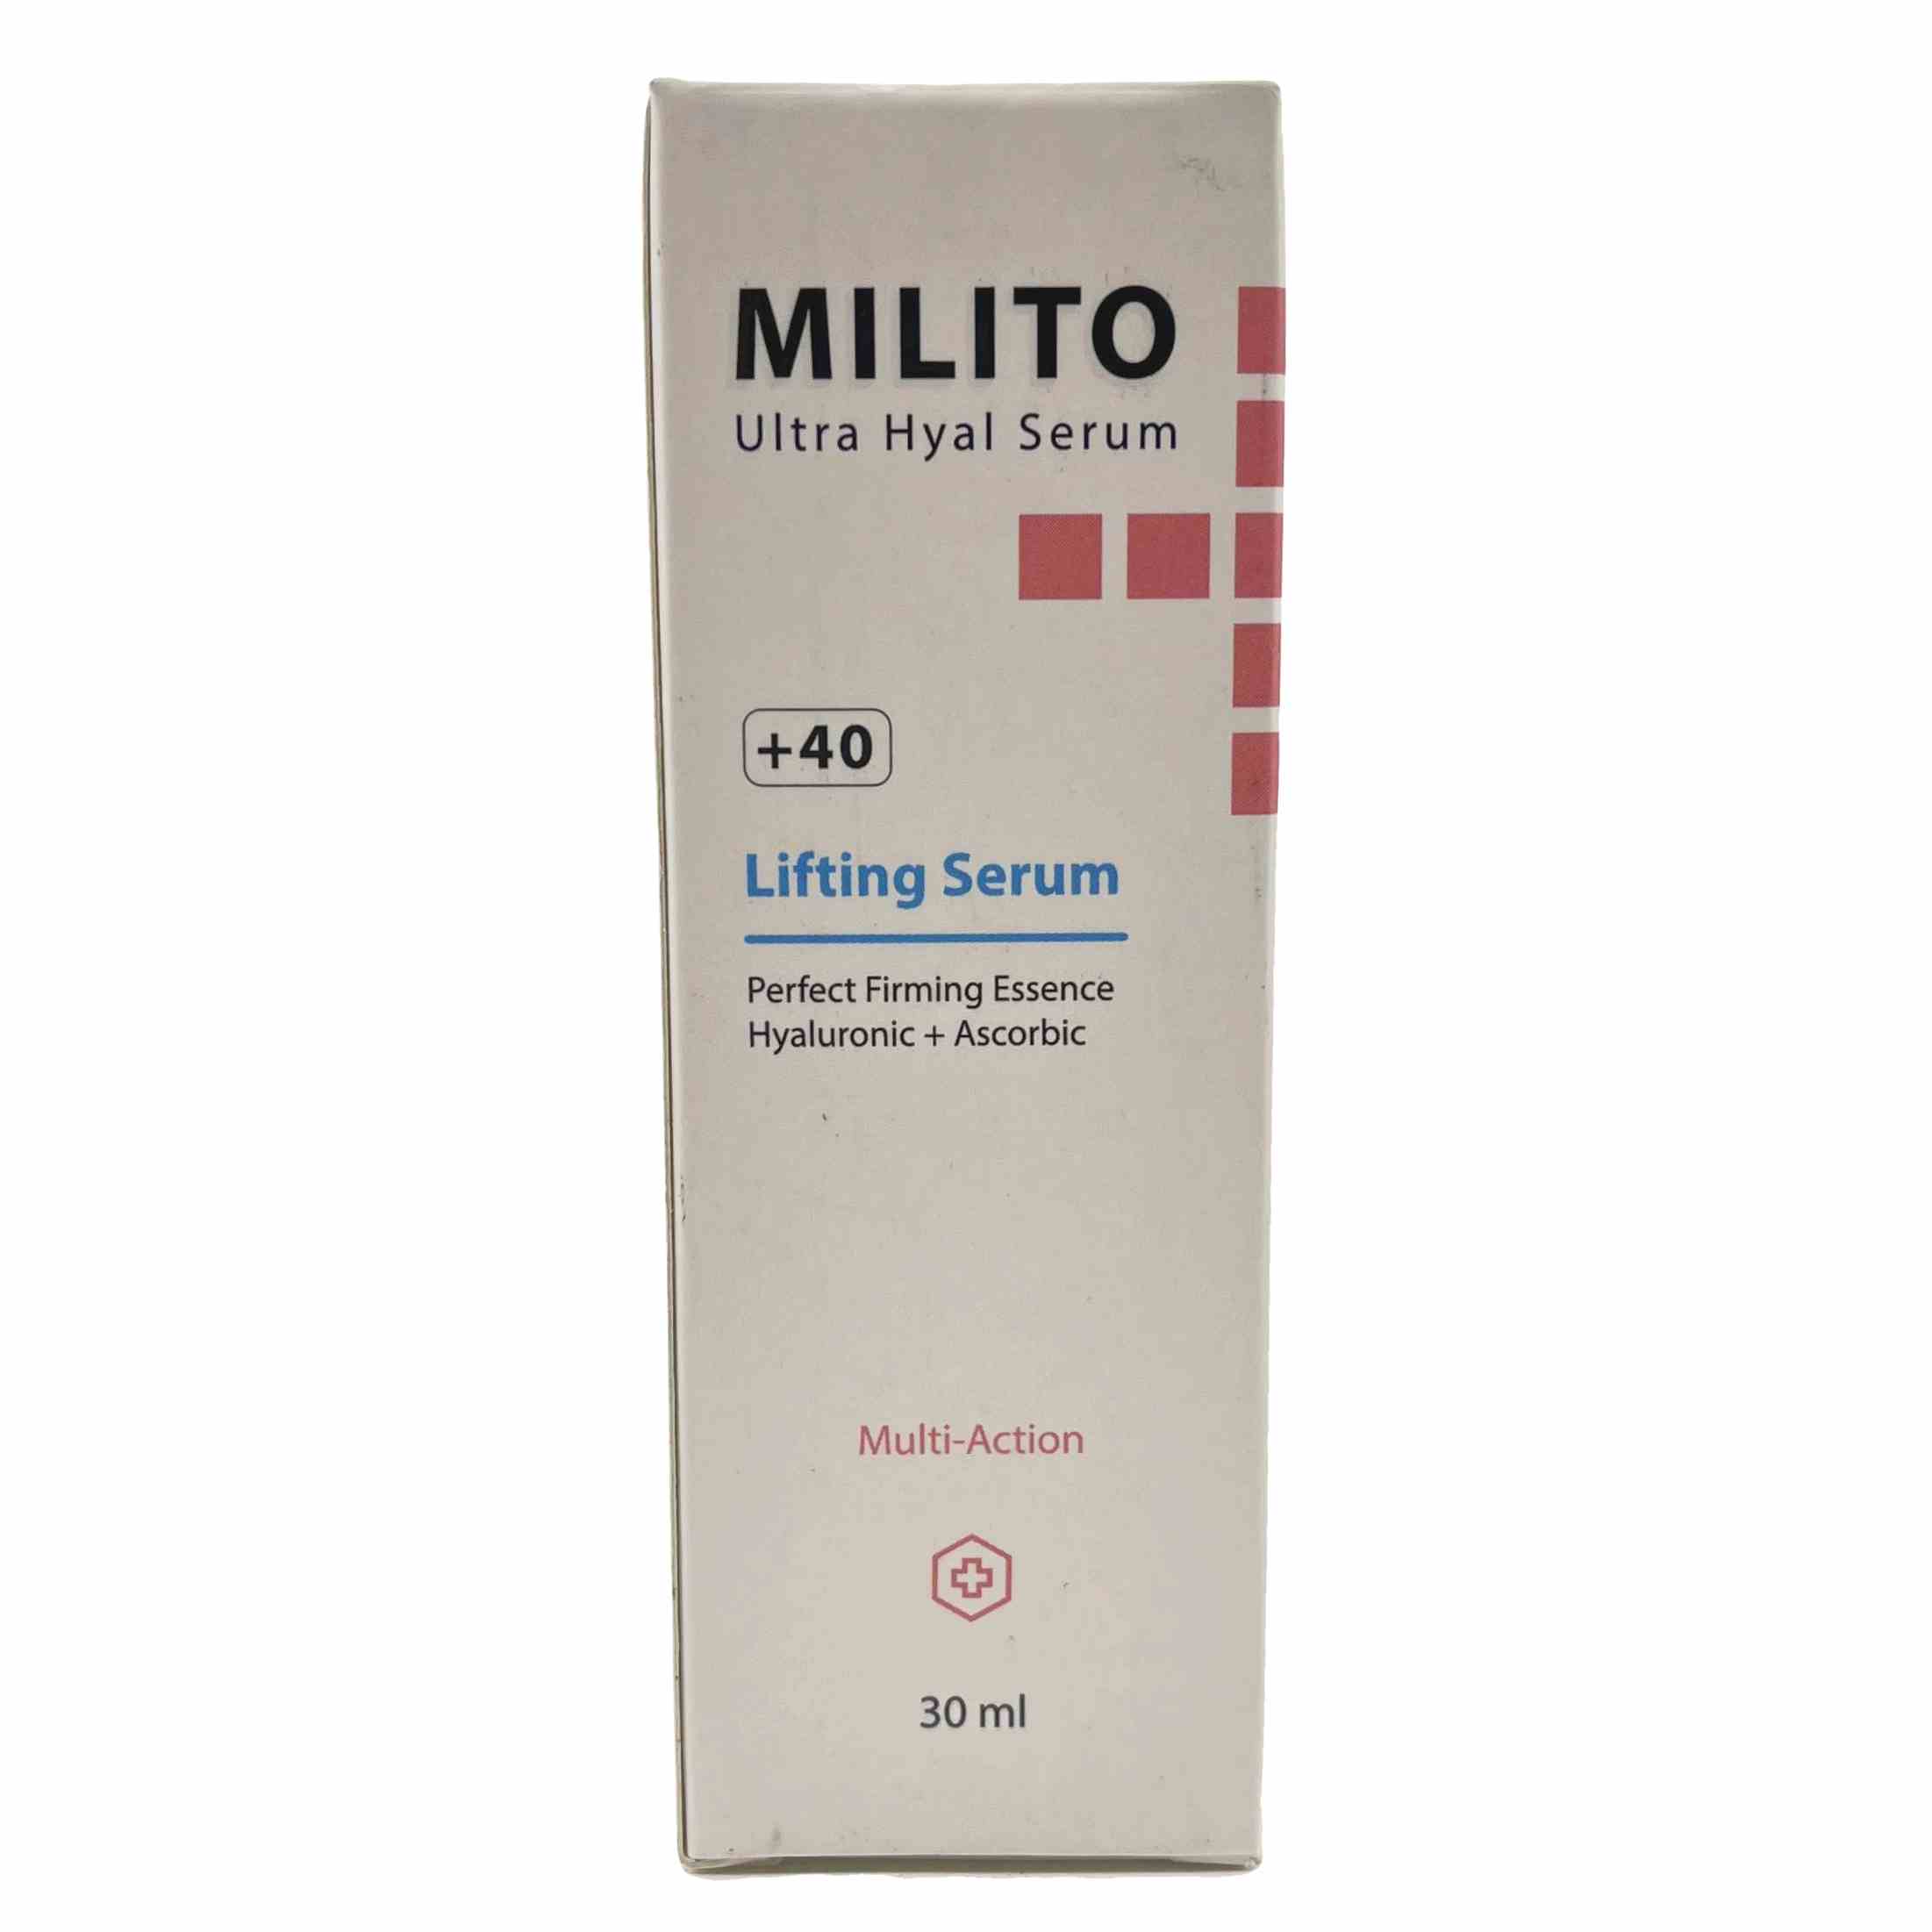 سرم لیفتینگ صورت میلیتو مناسب انواع پوست Milito Lifting Serum